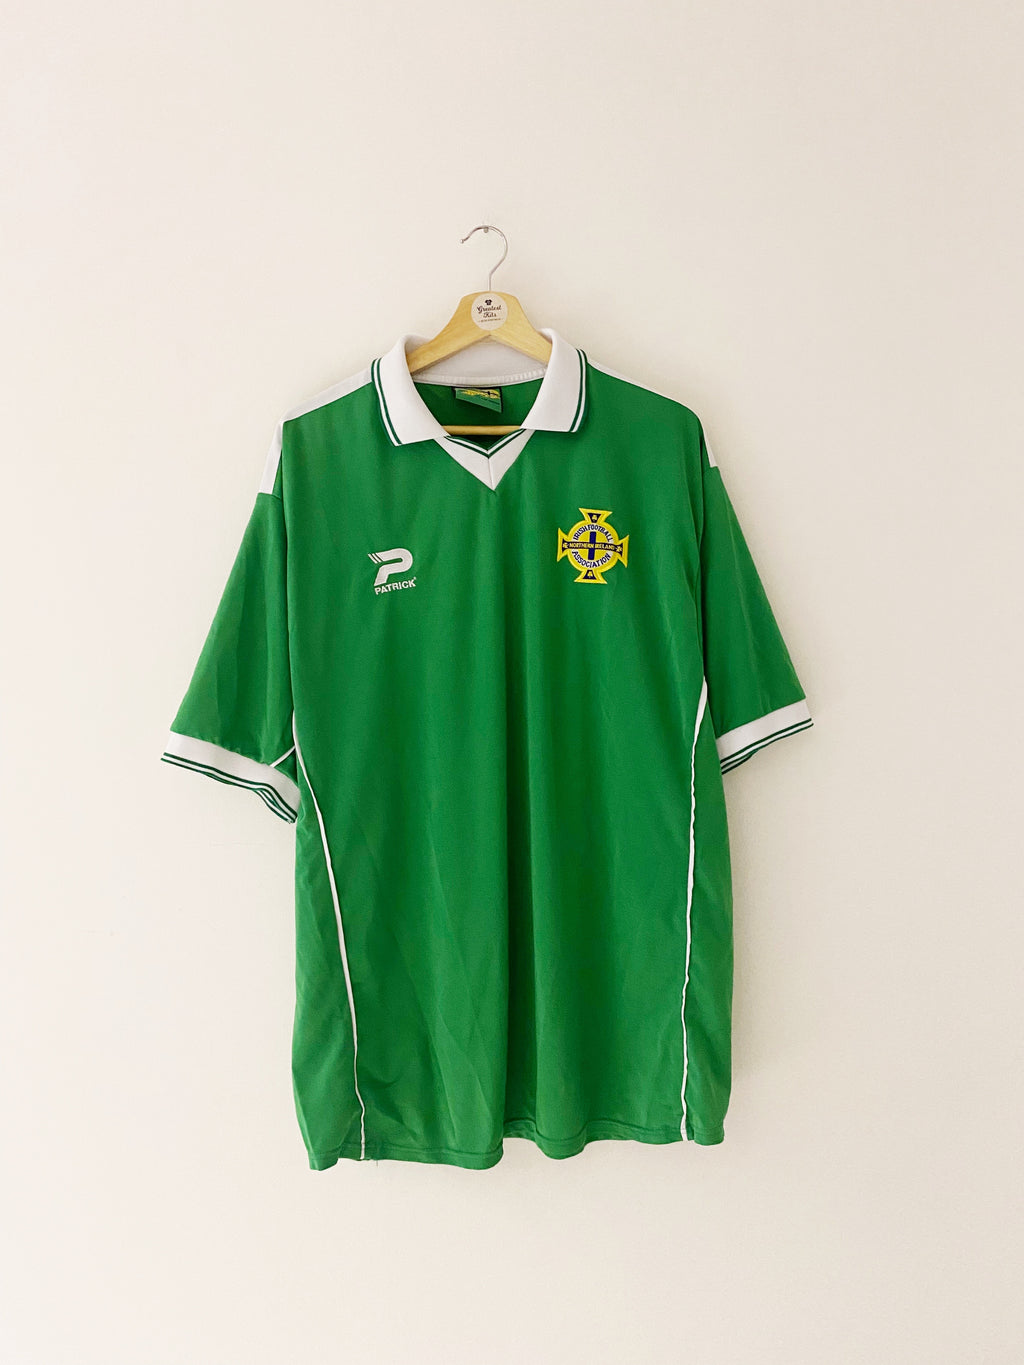 2000/02 Northern Ireland Home Shirt (XXL) 9/10